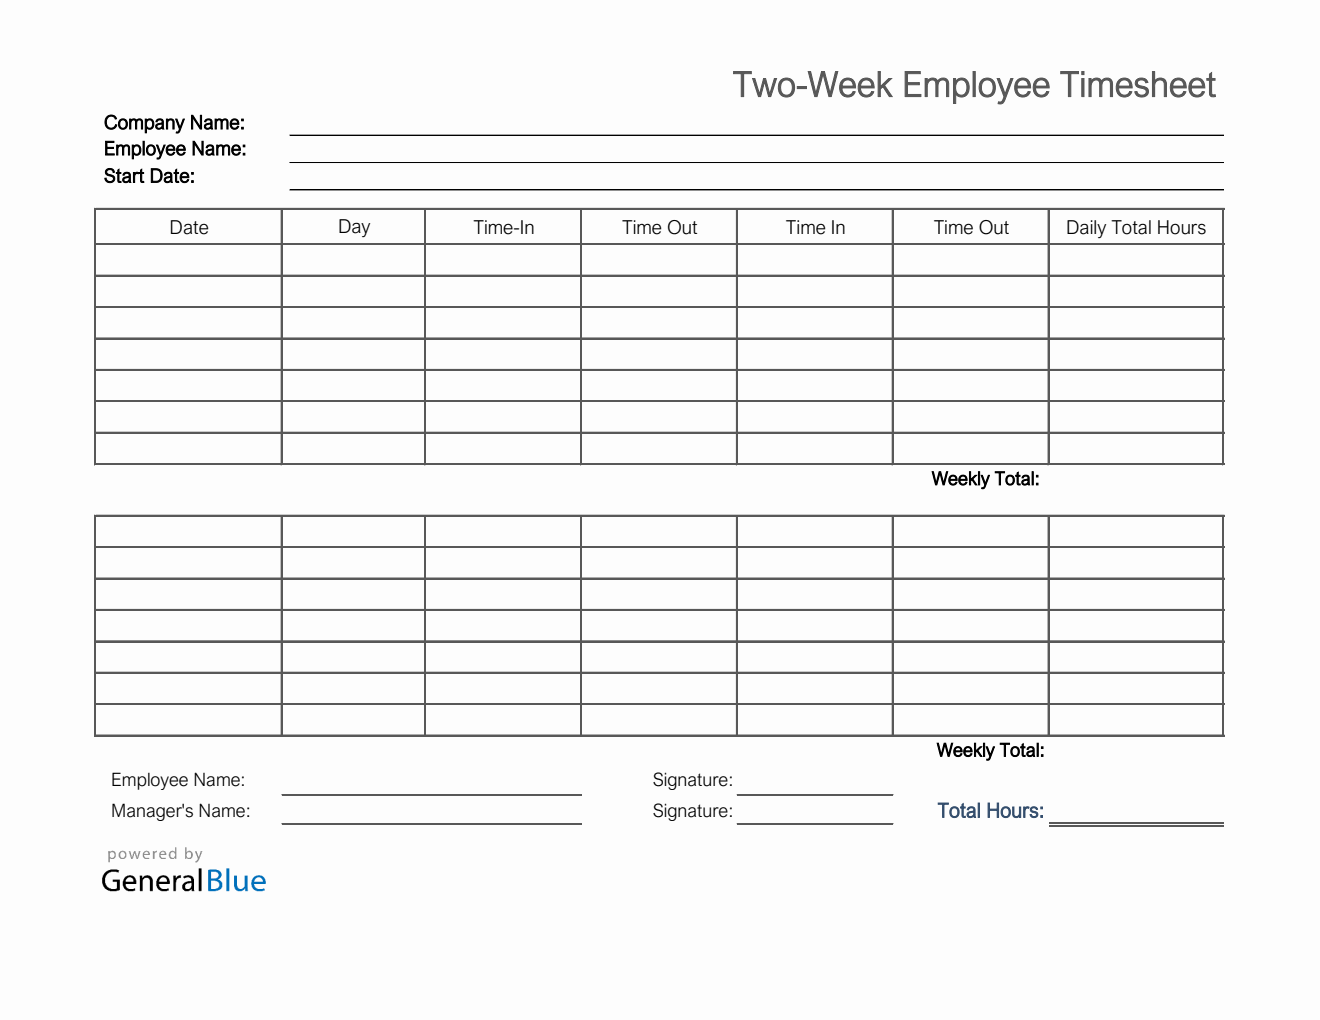 Printable Two-Week Employee Timesheet in Excel